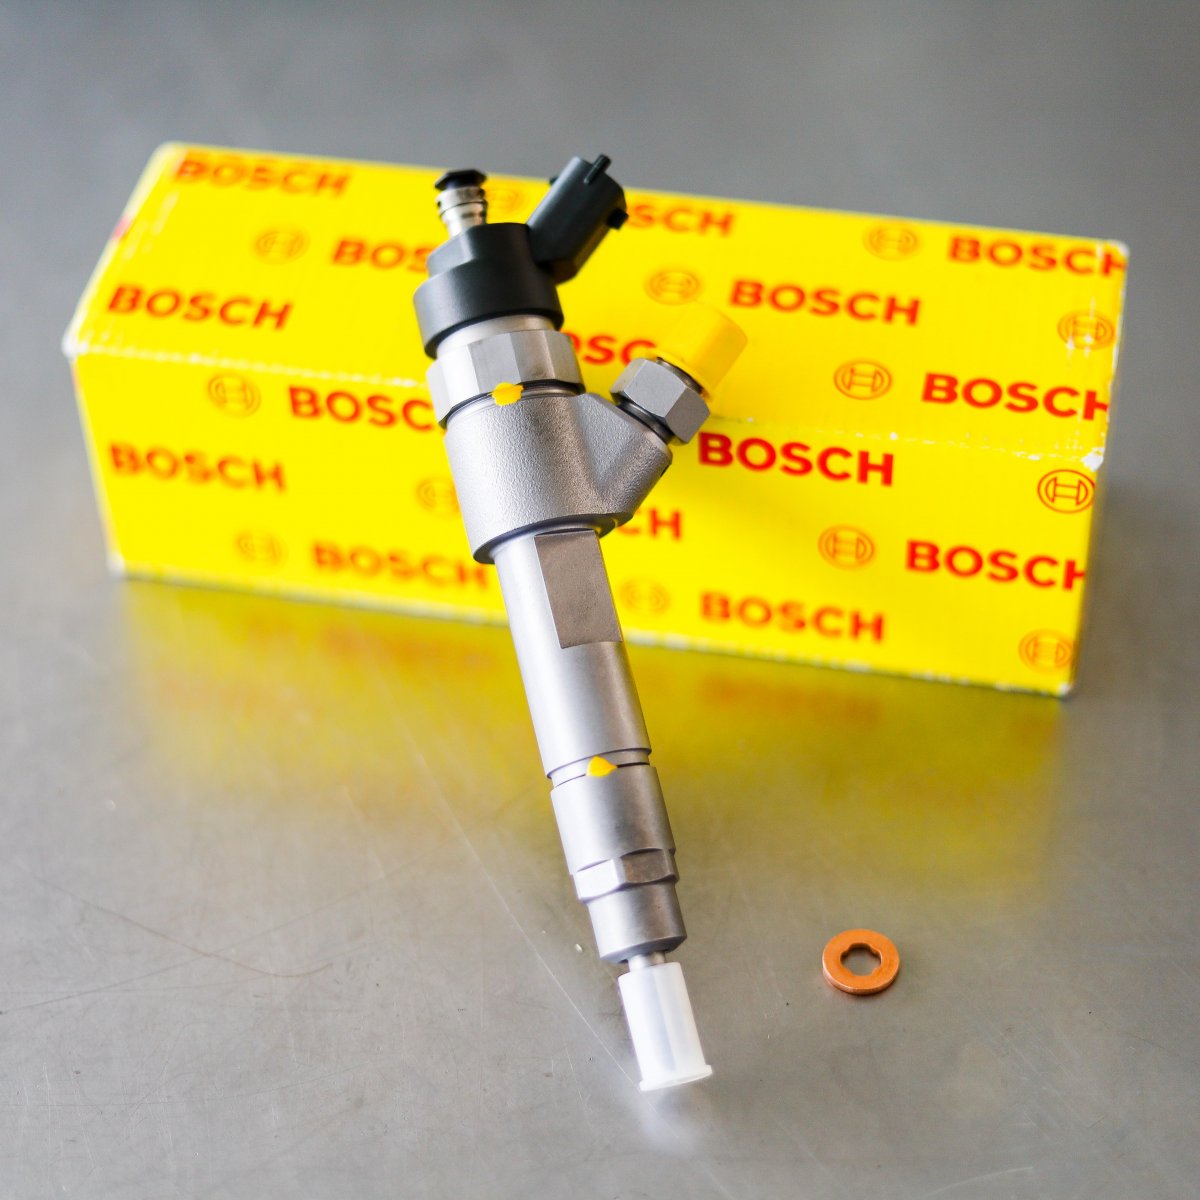 Wtryskiwacz Bosch zregenerowany przygotowany do wysyłki do kupującego na gwarancji na okres 24 miesięcy - niska cena